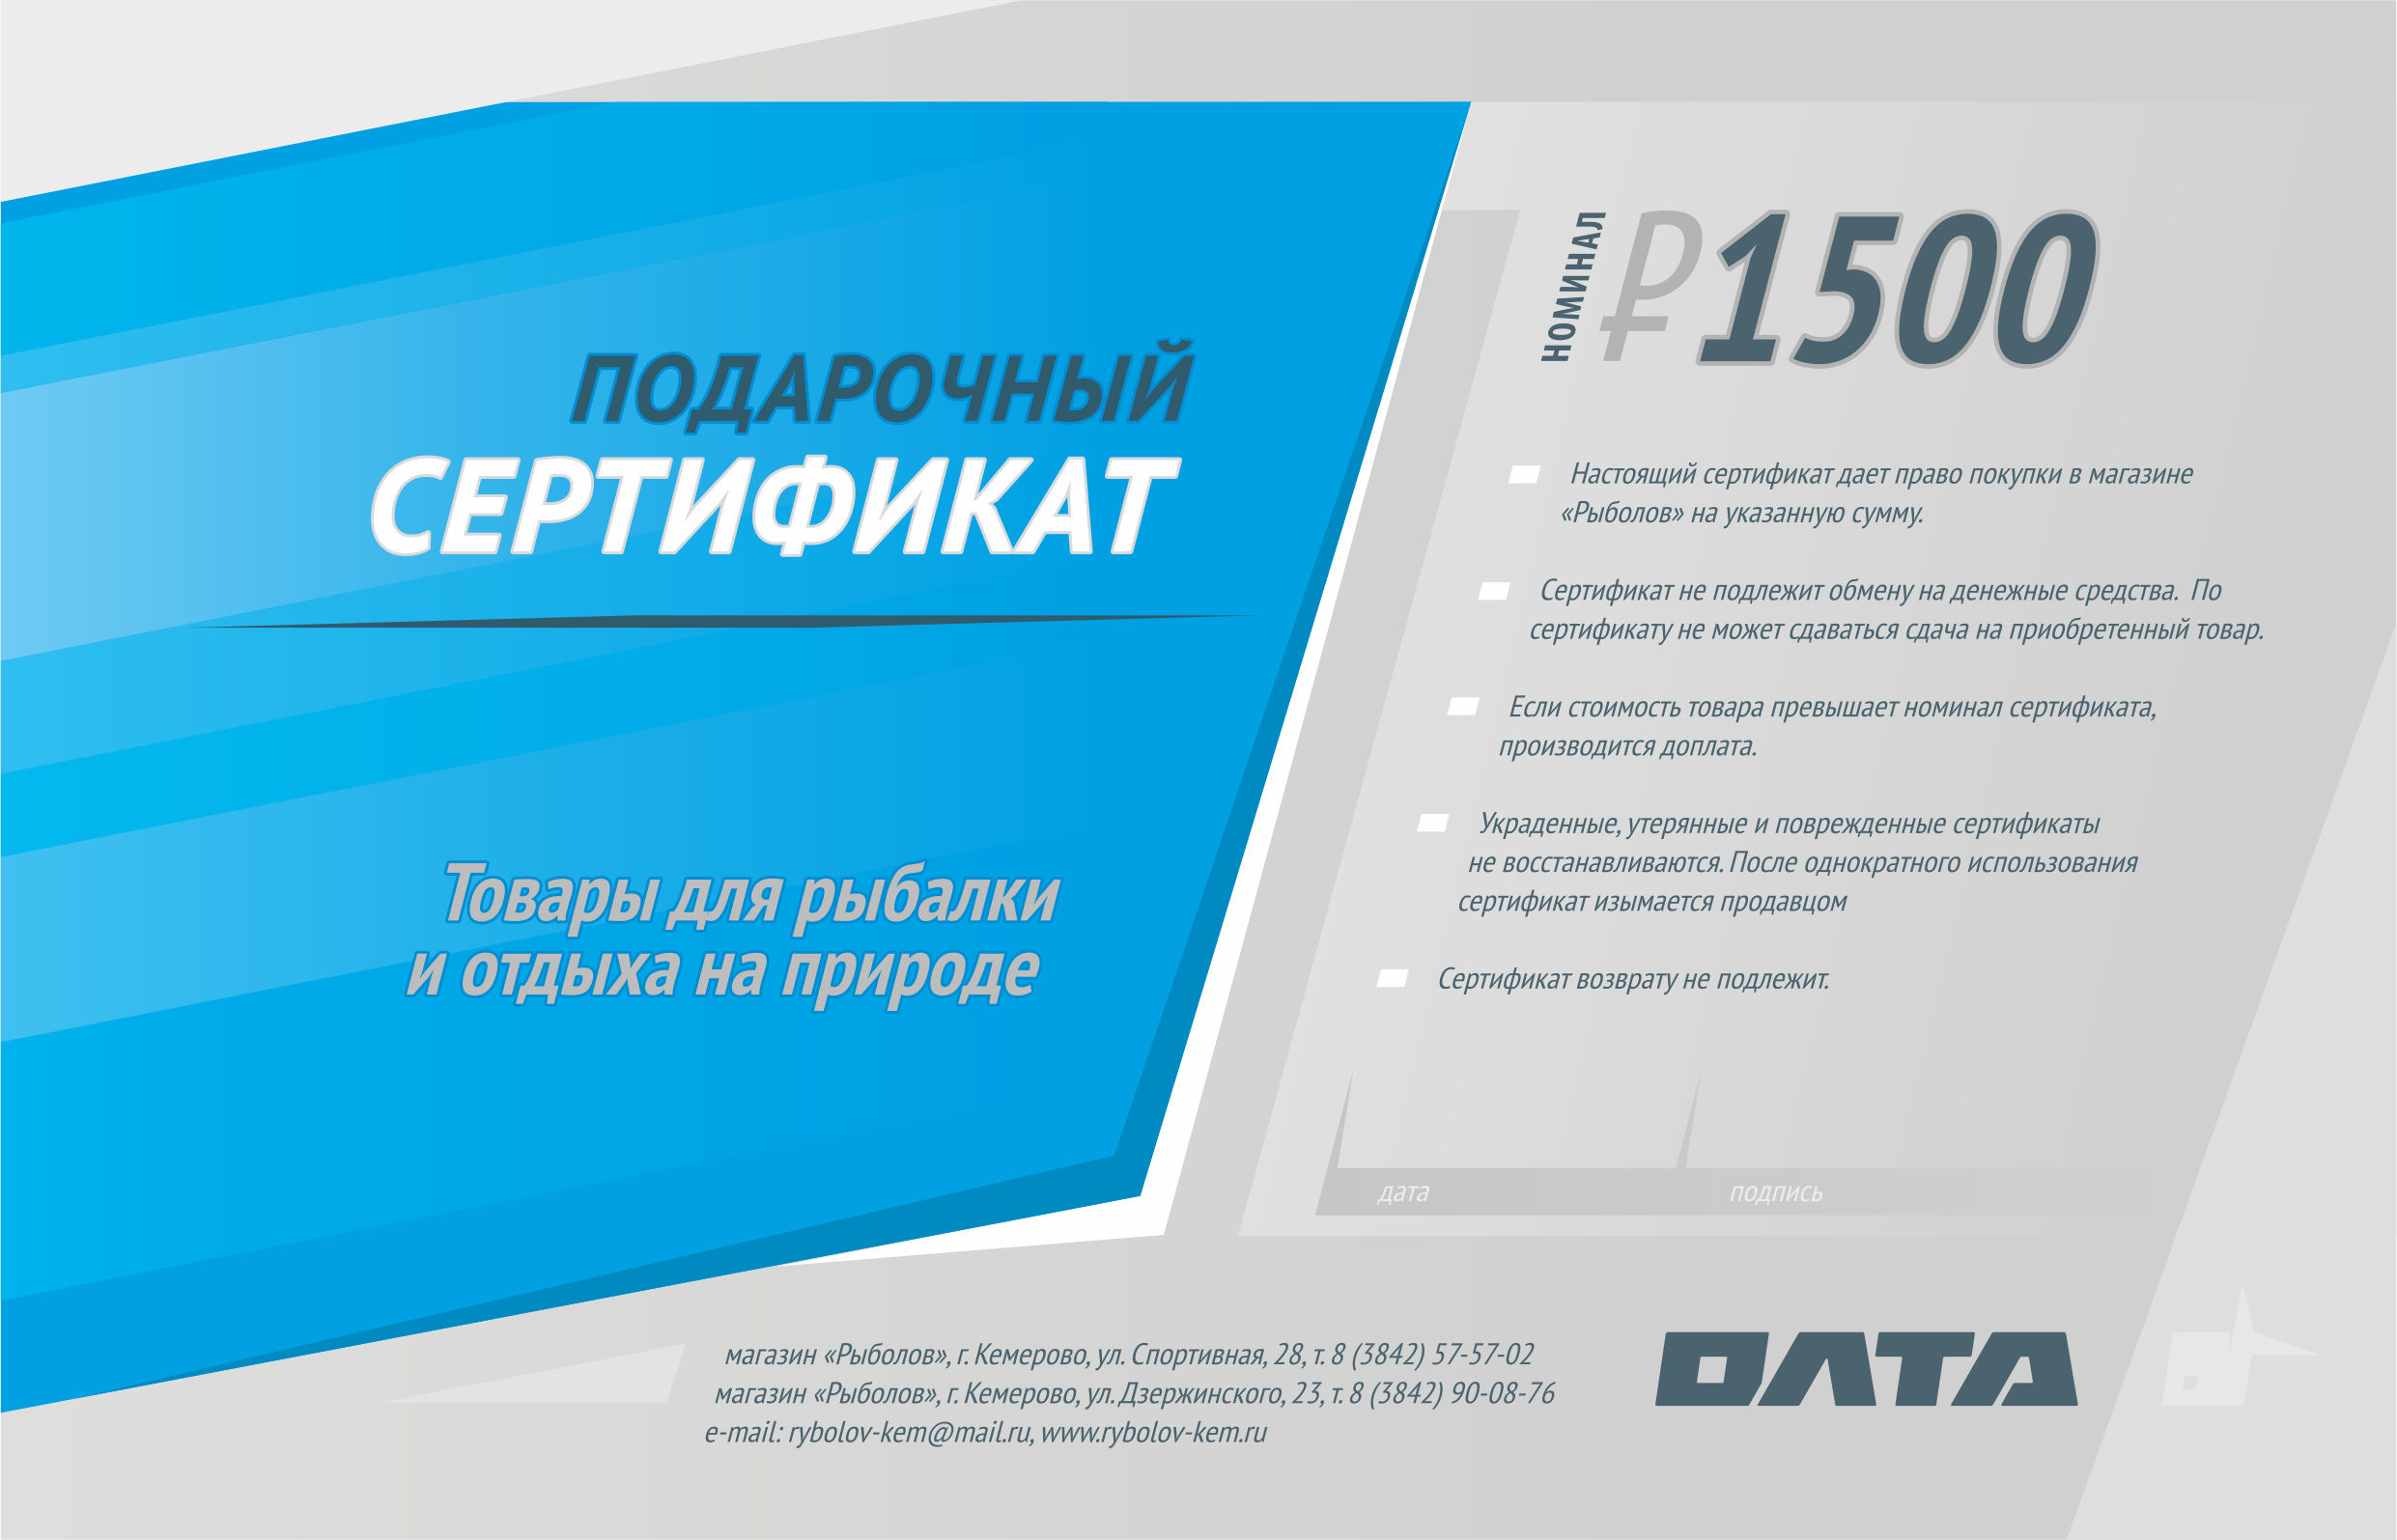 Подарочный сертификат, номинал 1500 рублей